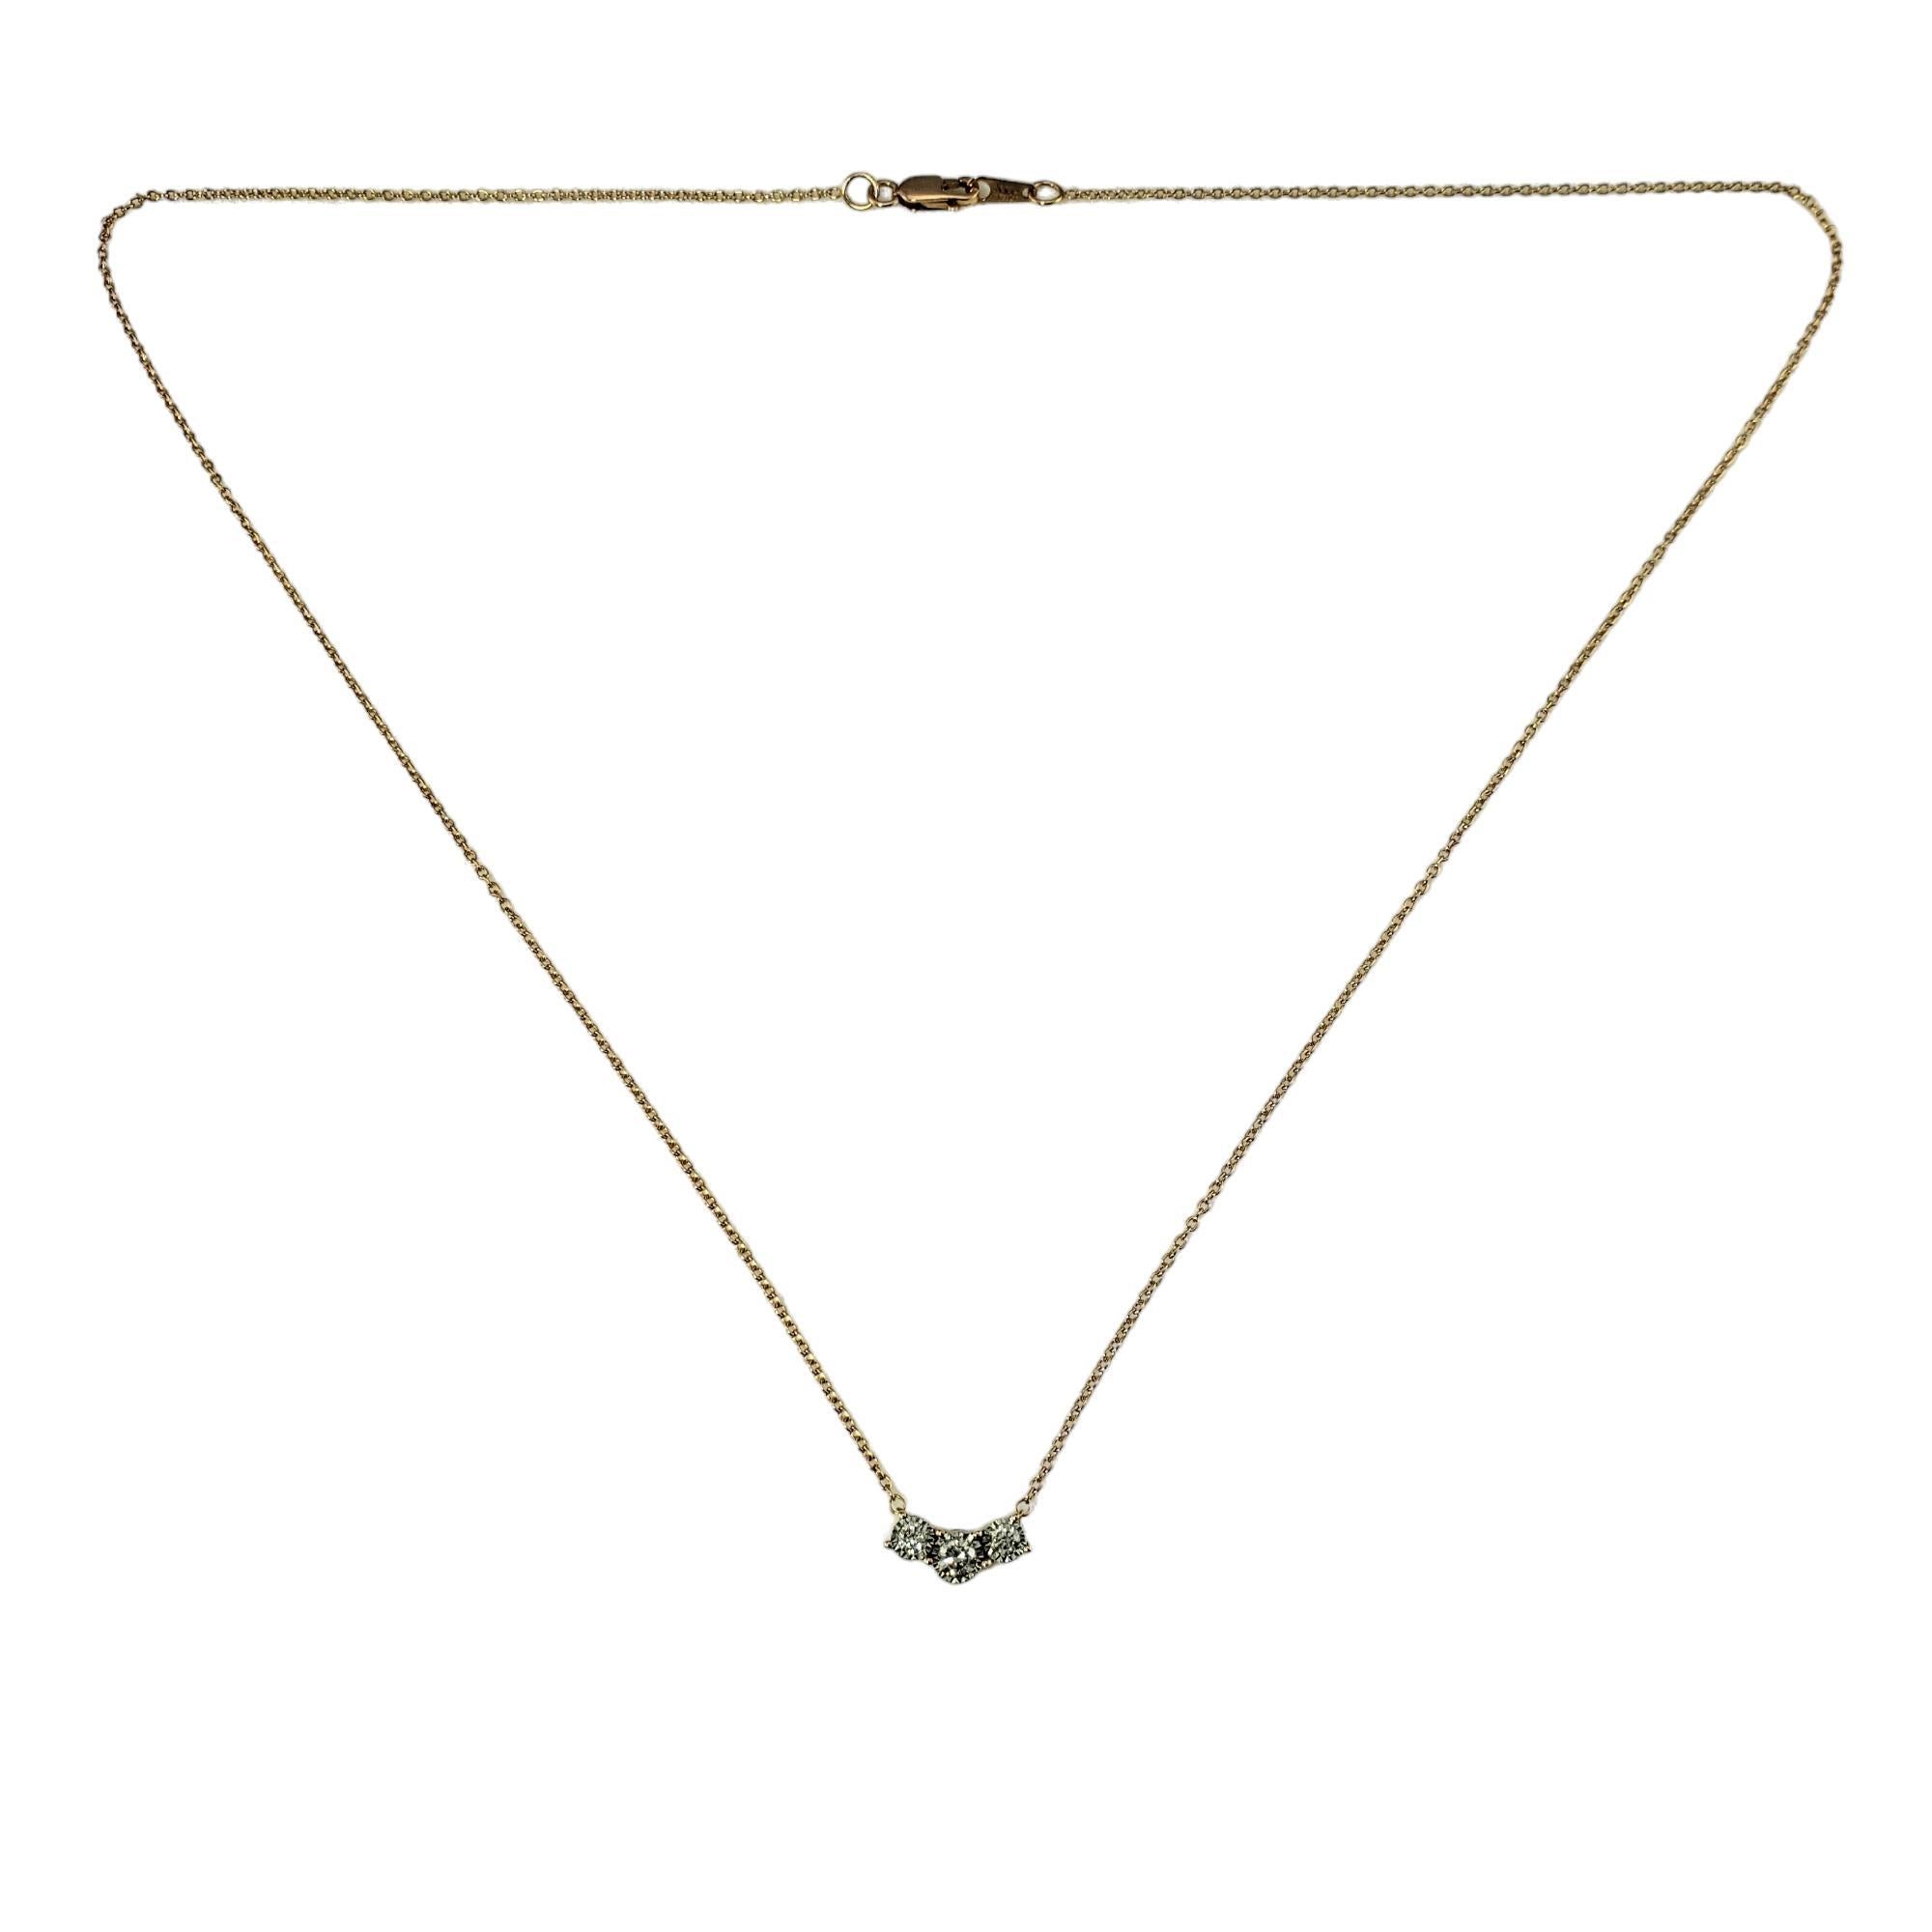 Vintage 10K Rose Gold Diamant-Anhänger Halskette-

Diese funkelnde Halskette besteht aus drei runden Diamanten im Brillantschliff, die in klassisches 10-karätiges Roségold gefasst sind.

Ungefähres Gesamtgewicht der Diamanten:  .20 ct.

Farbe des